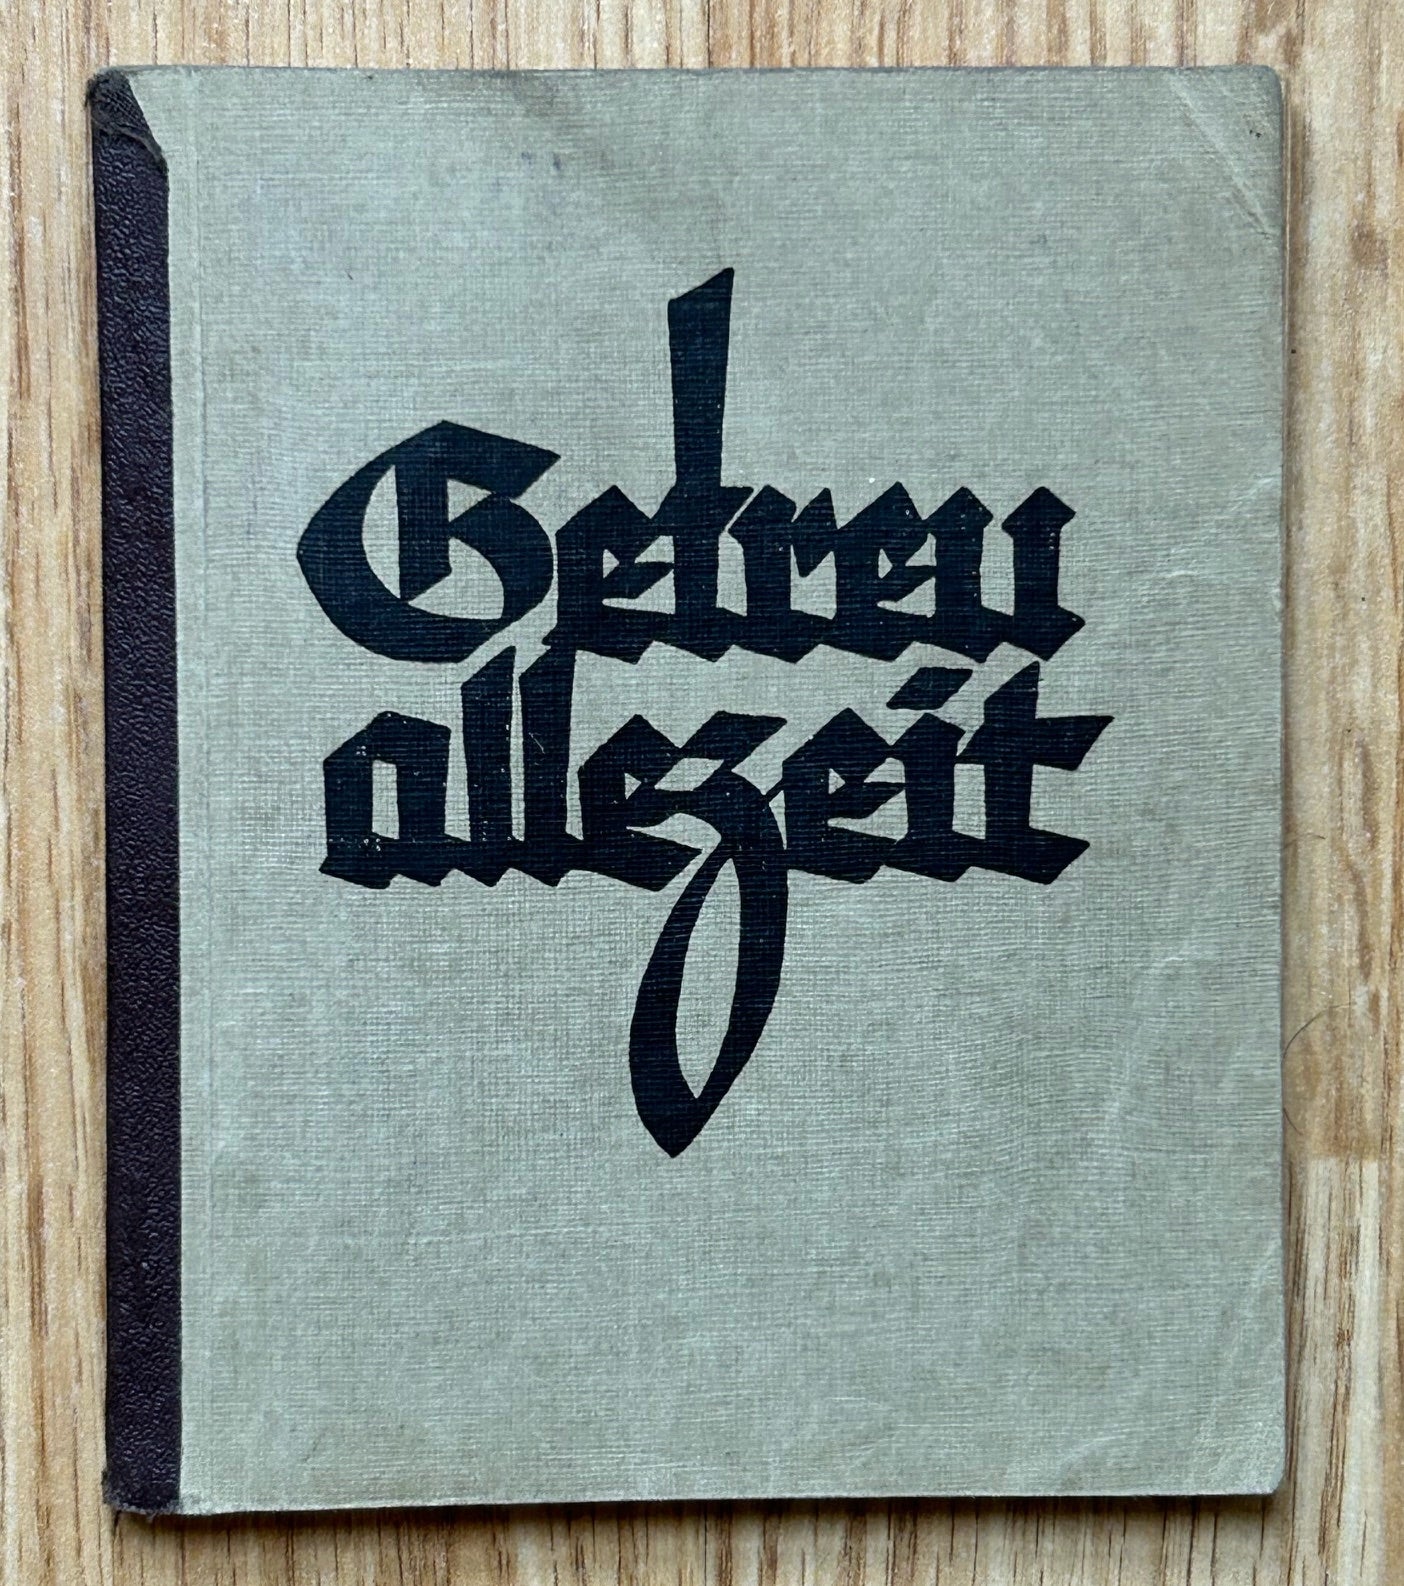 Getreu Allezeit - 1935 sports association song book